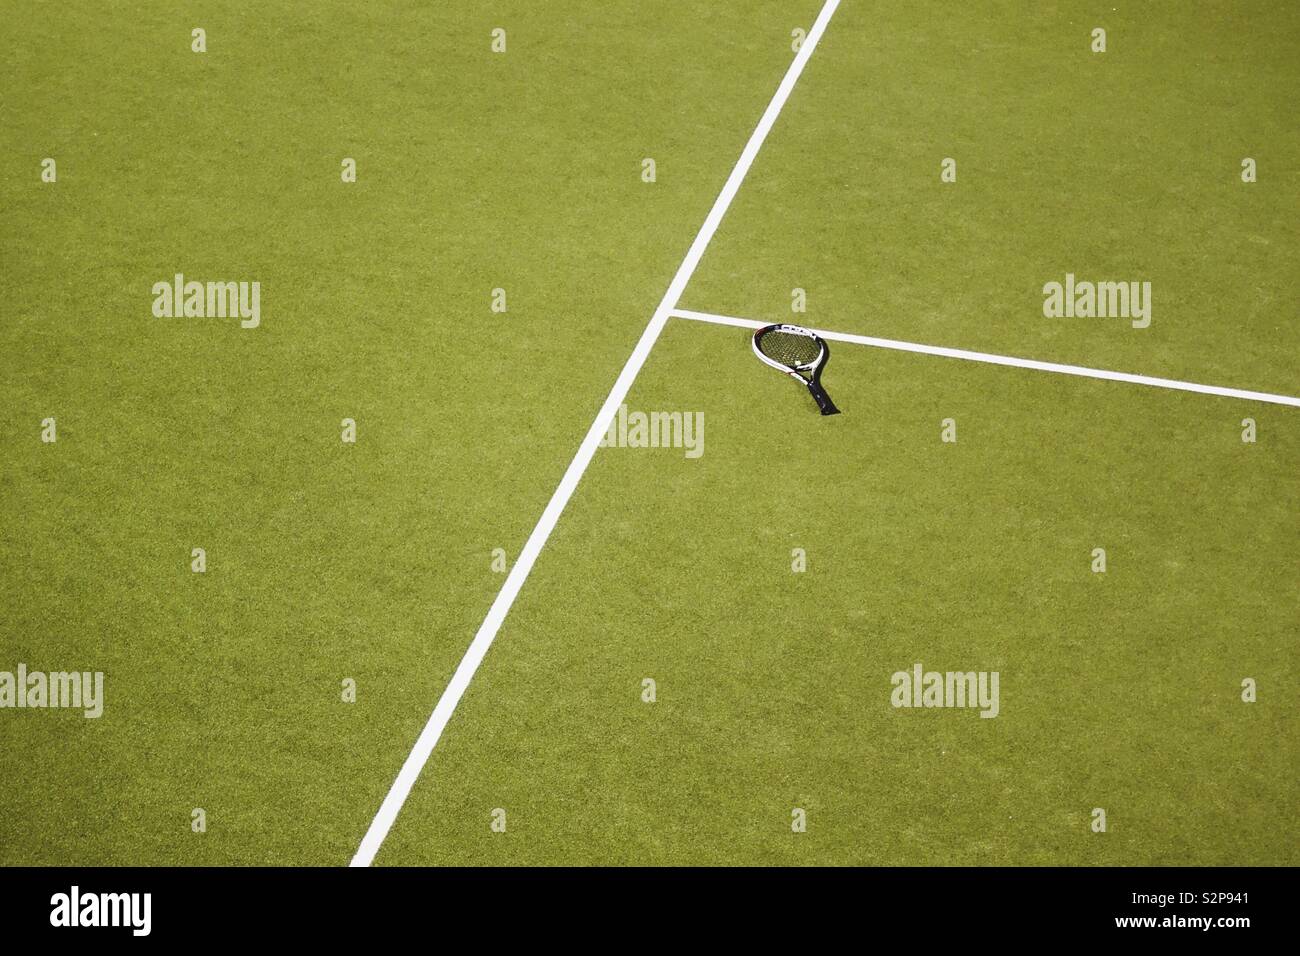 Raquette de tennis simple oubli de pose sur le sol au milieu de la matchfield Banque D'Images